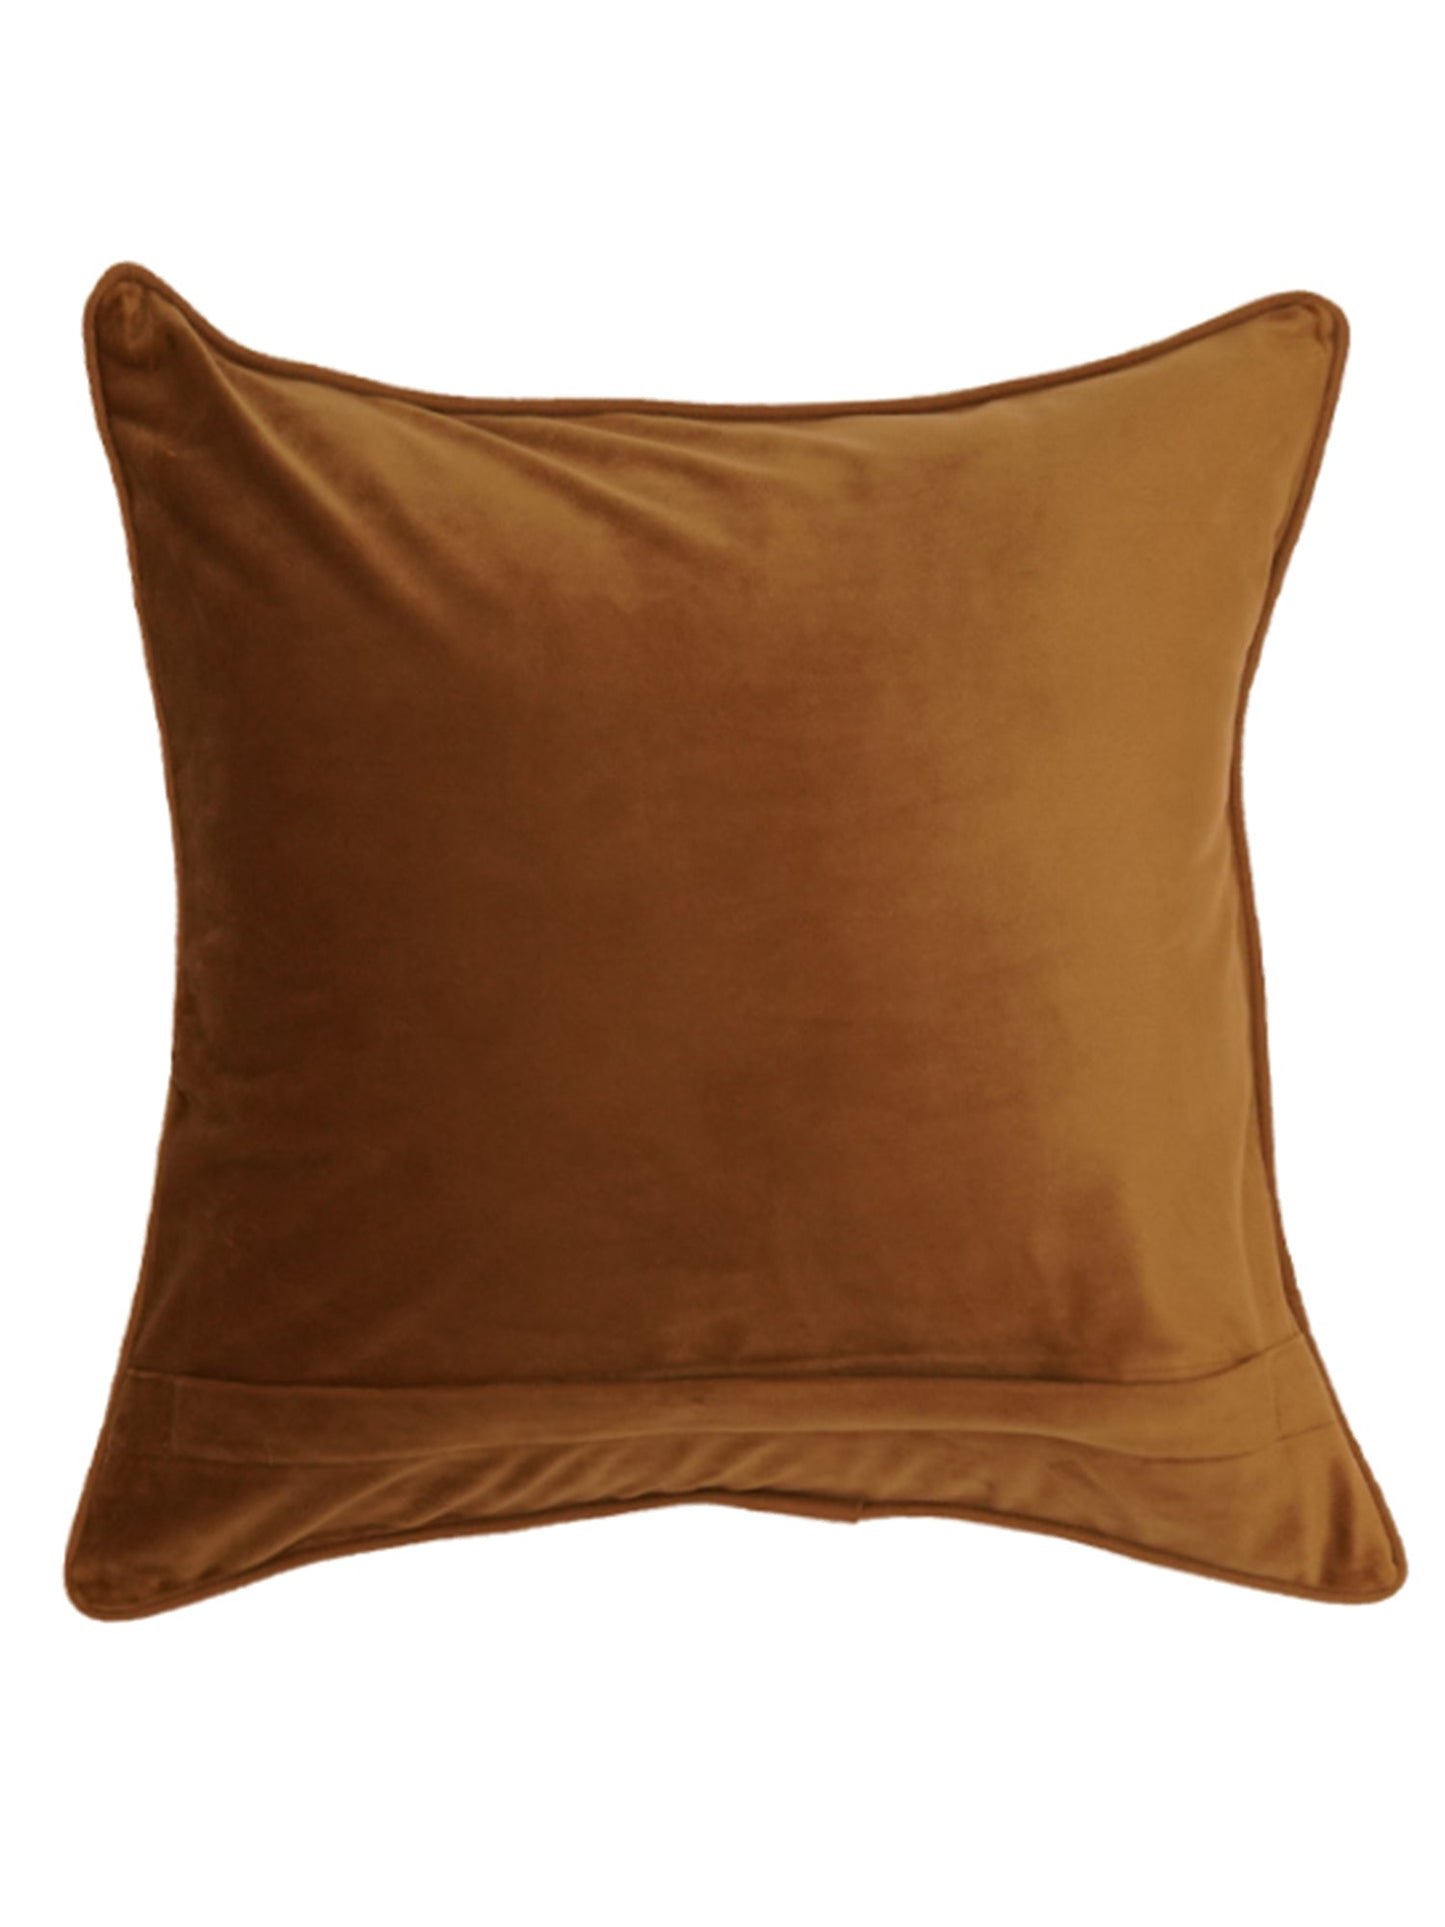 Cushion Cover Velvet  Golden Brown - 12" X 12"